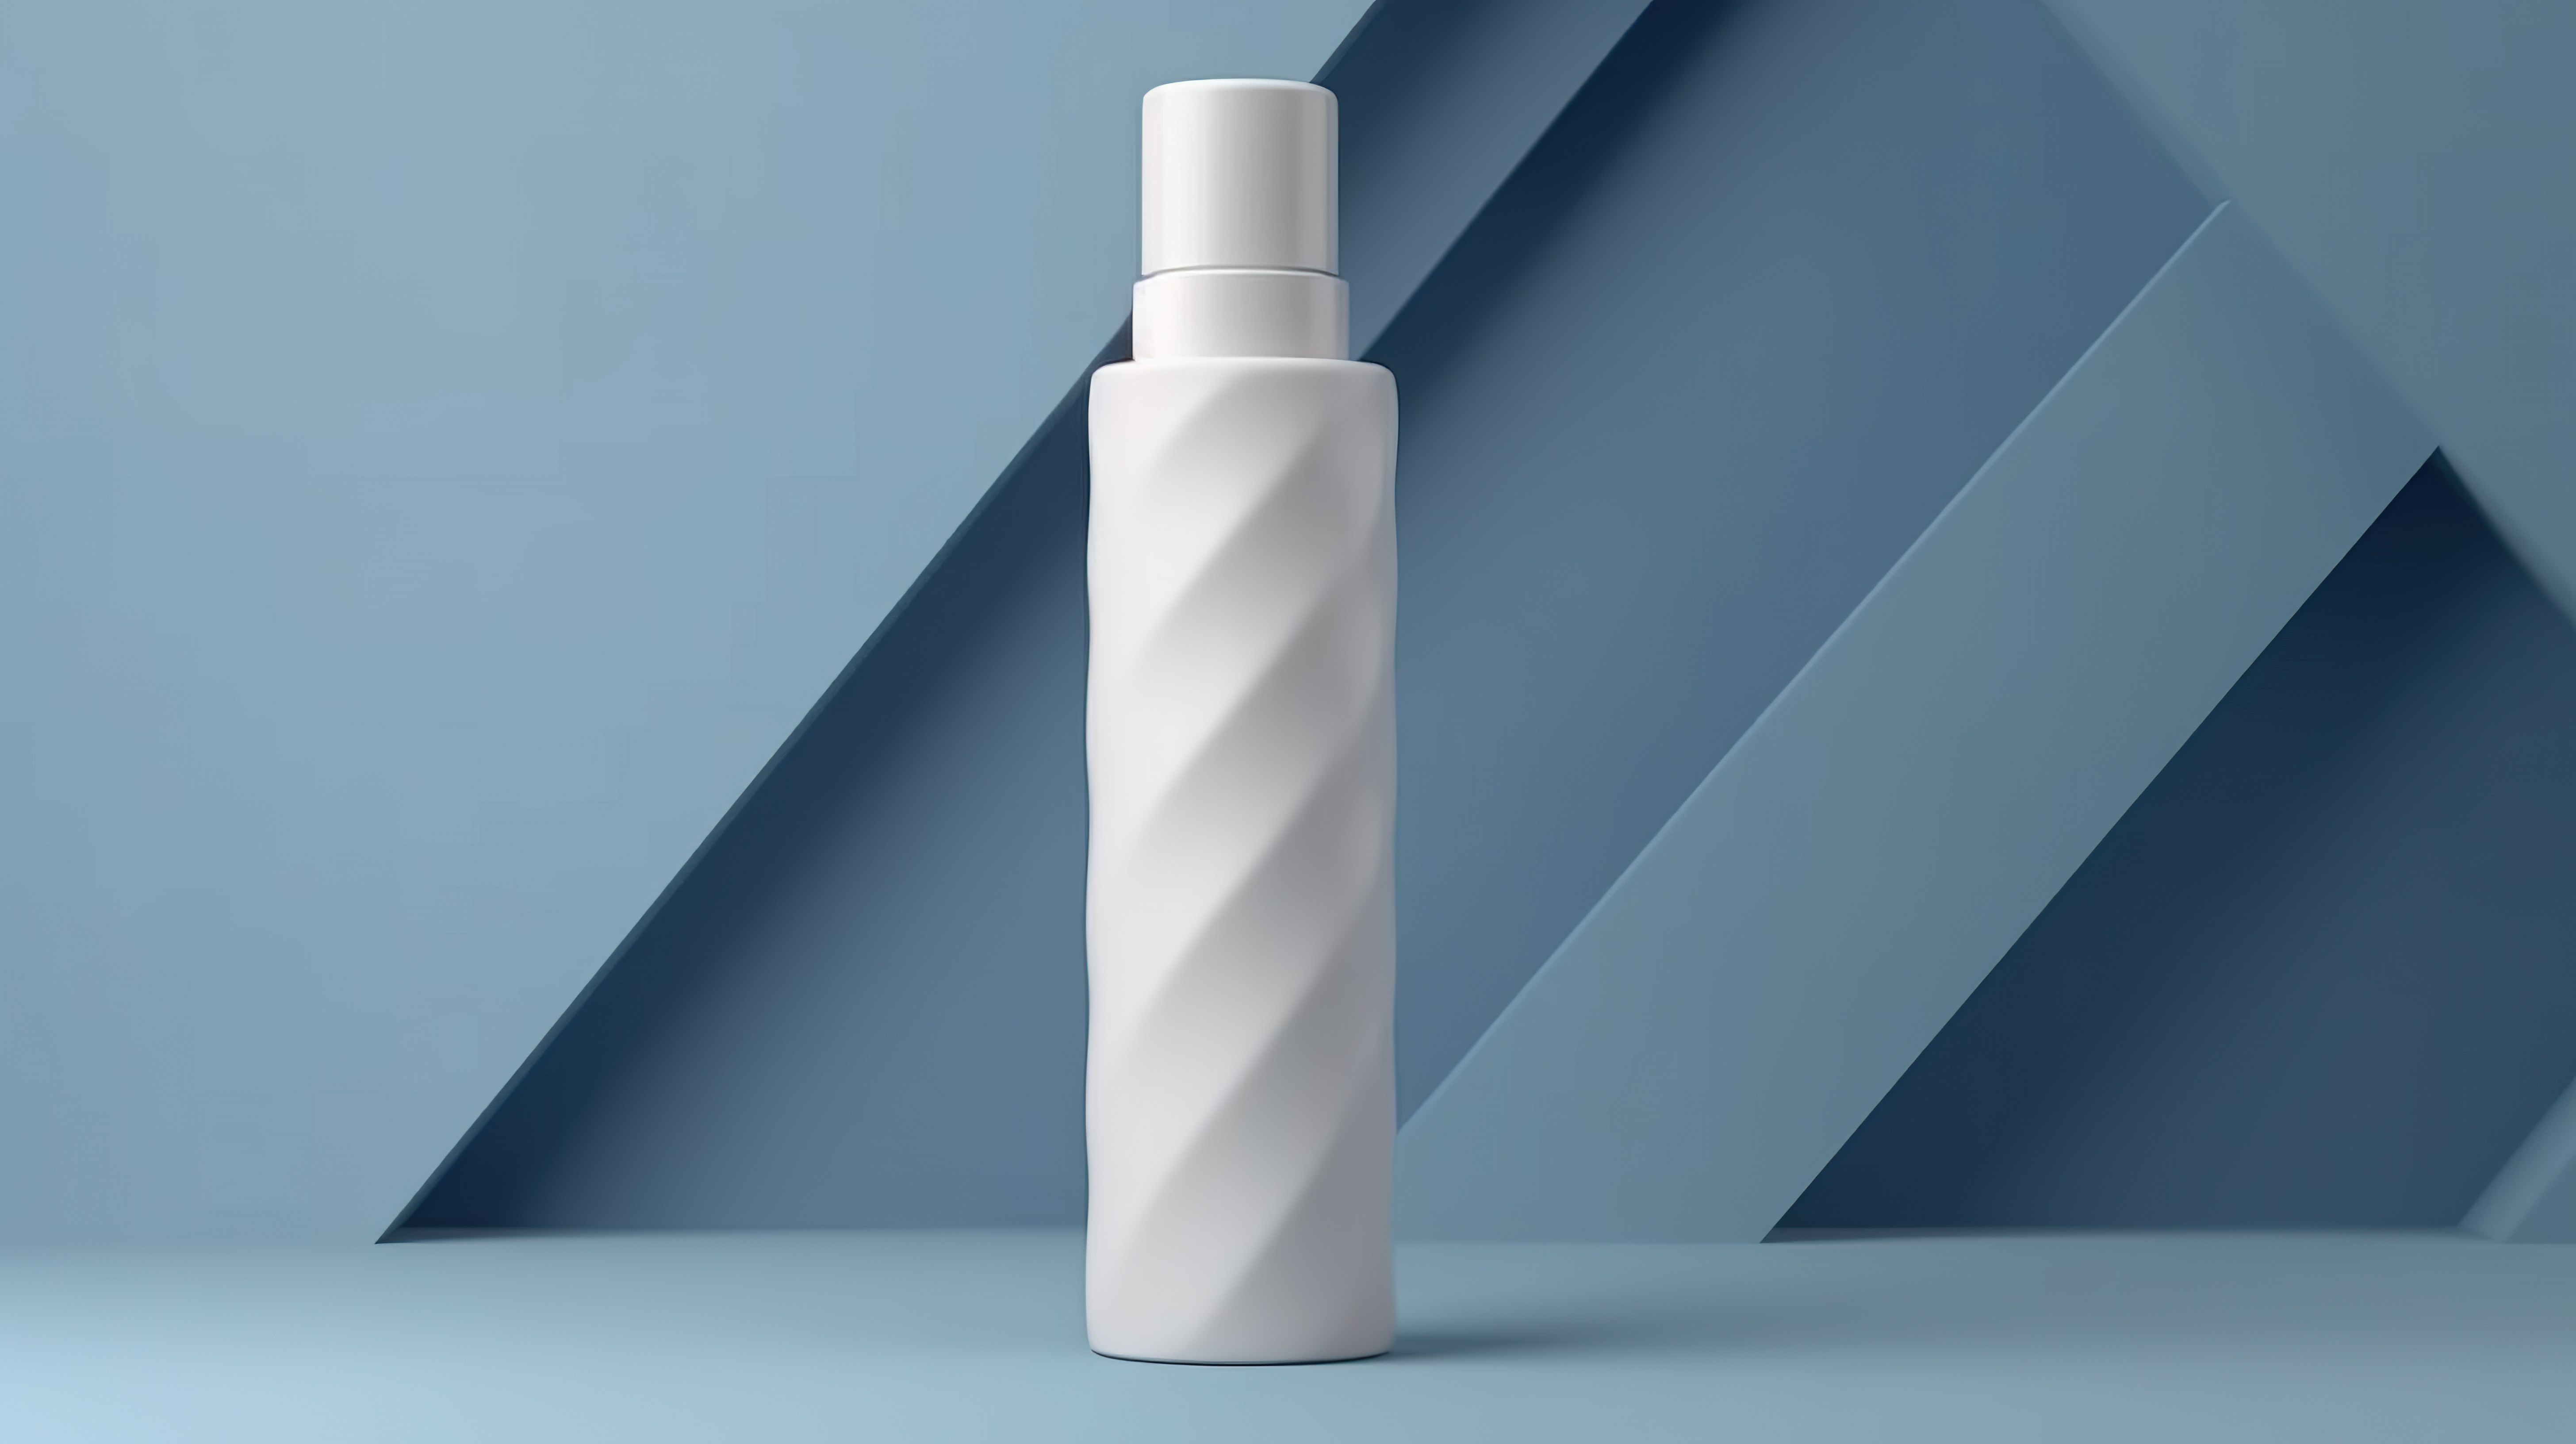 蓝色几何背景美学美容产品模型上白管护肤乳液的 3D 渲染图片